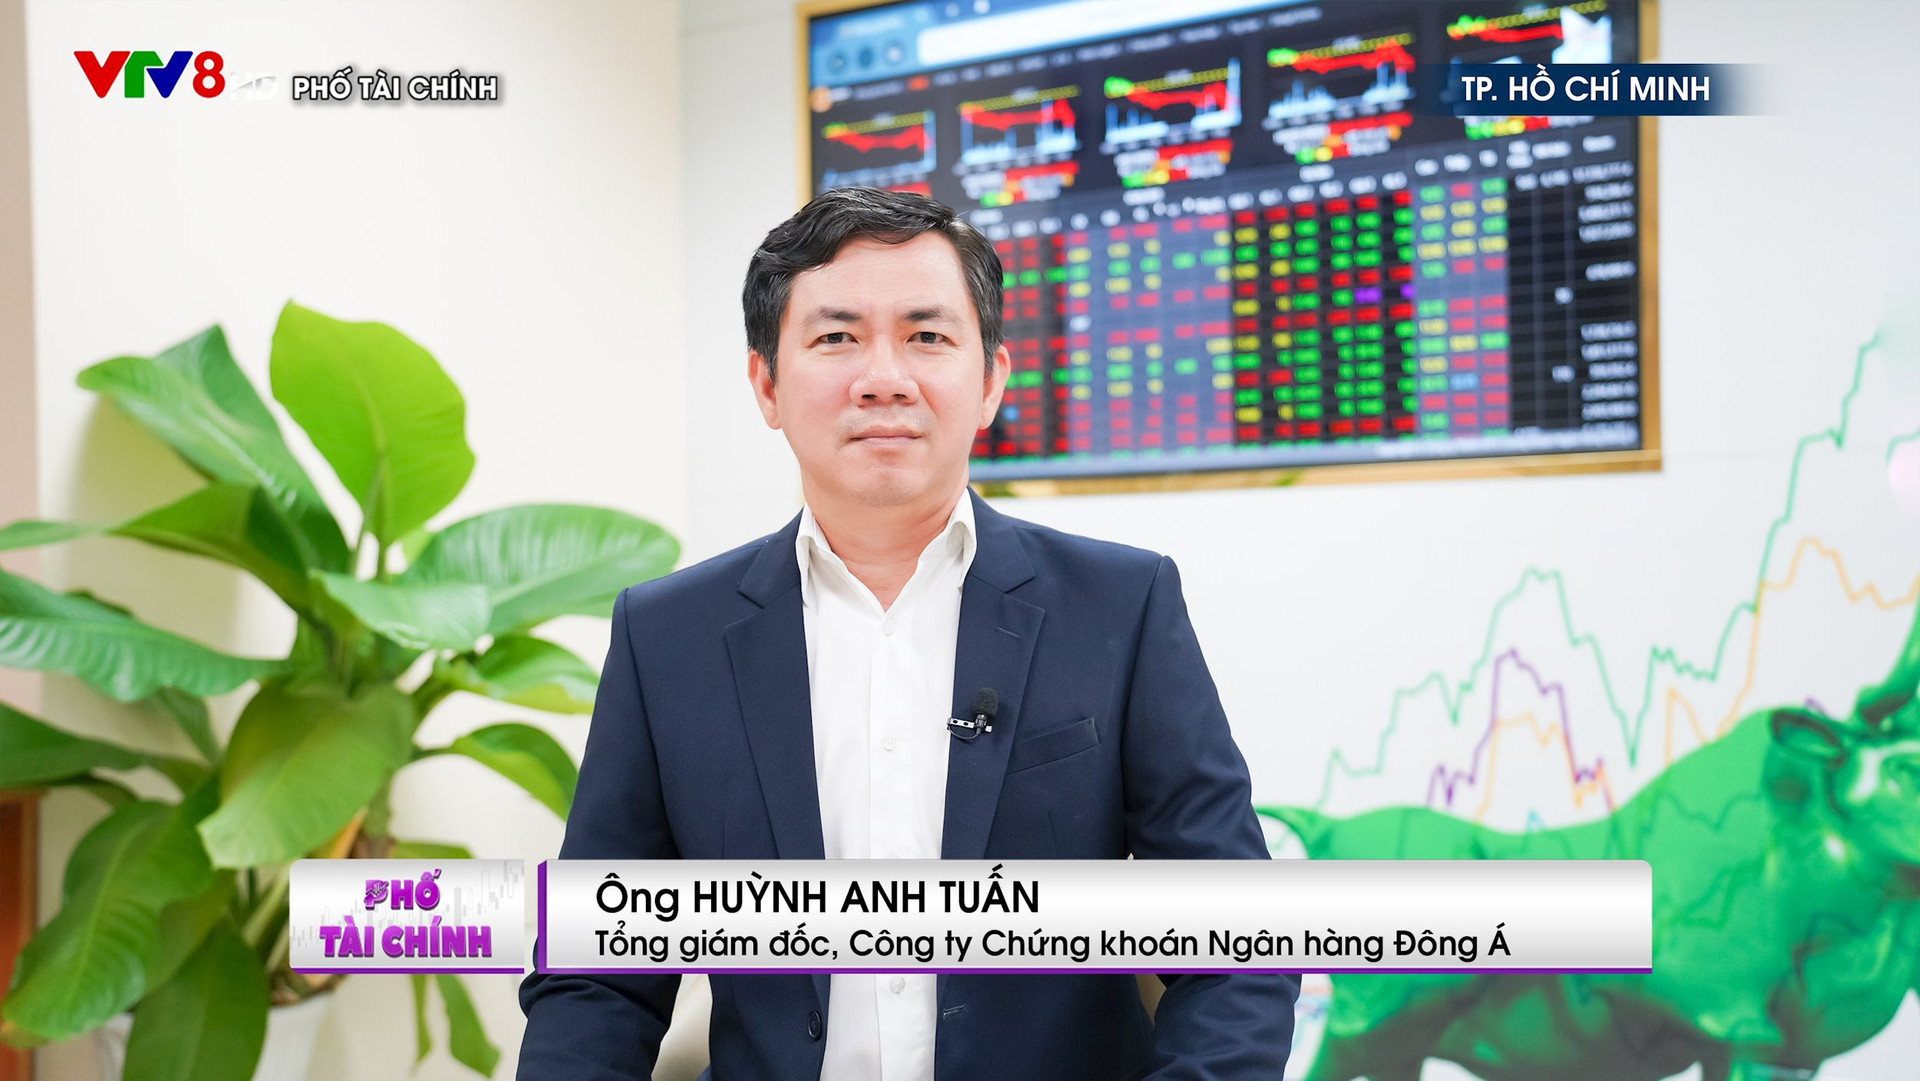 CEO Chứng khoán Đông Á: Đà tăng trưởng của thị trường chứng khoán từ đầu năm chưa phản ánh hết sự phục hồi cũng như tiềm năng của nền kinh tế